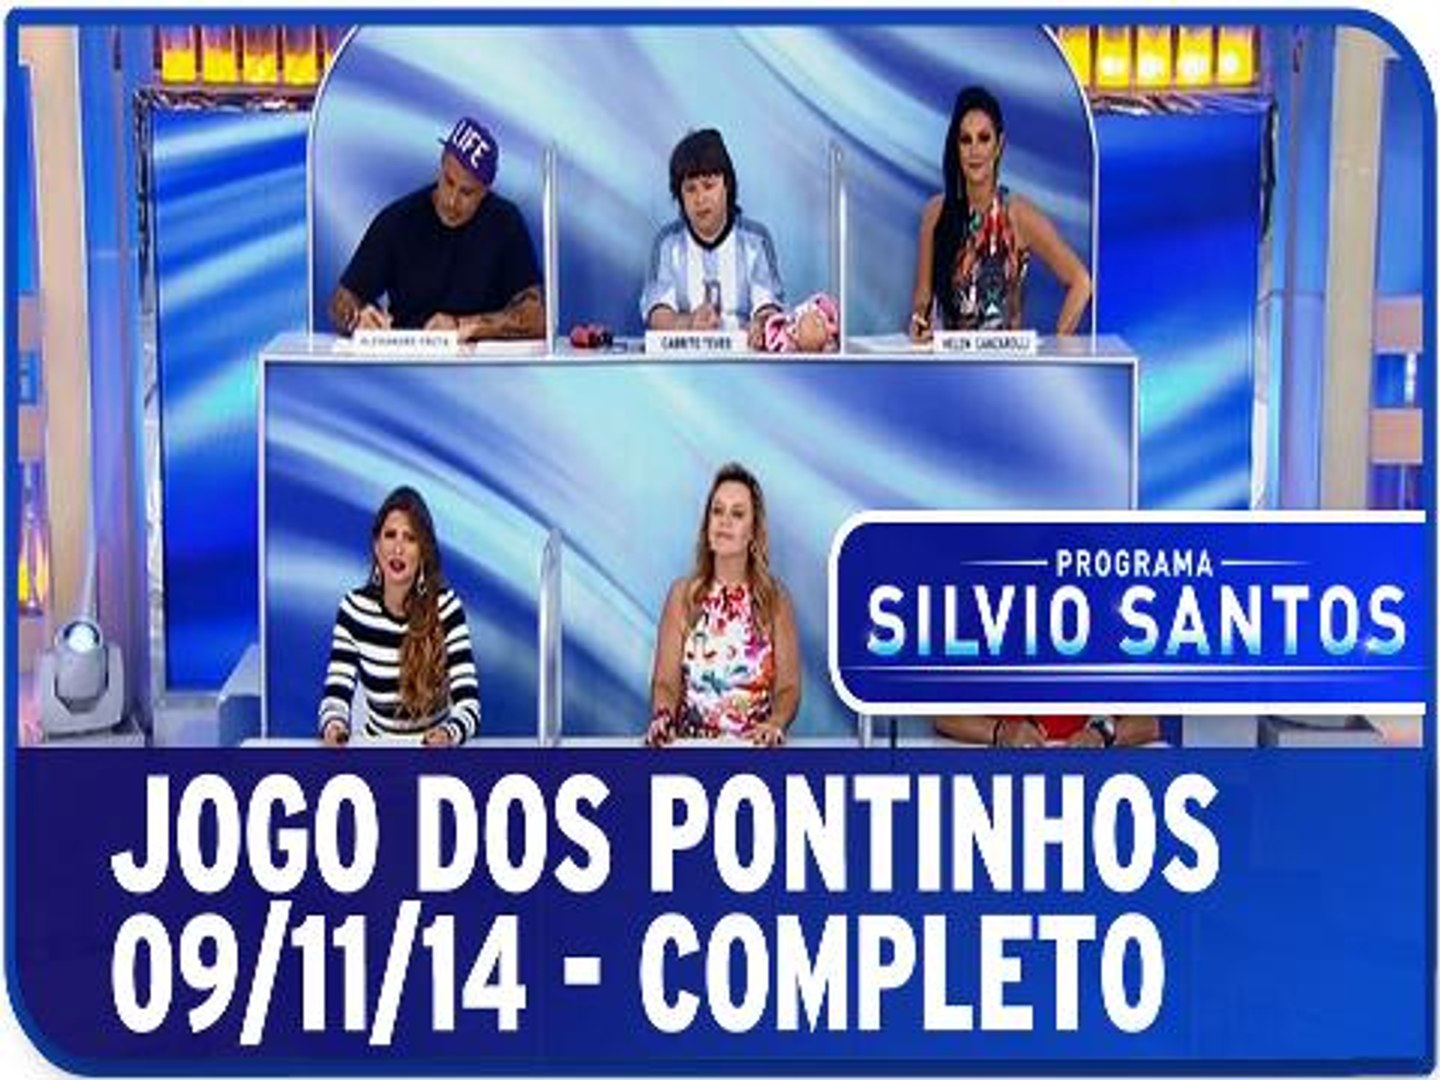 Jogo dos Pontinhos de 09/11/14 - Completo - Vídeo Dailymotion